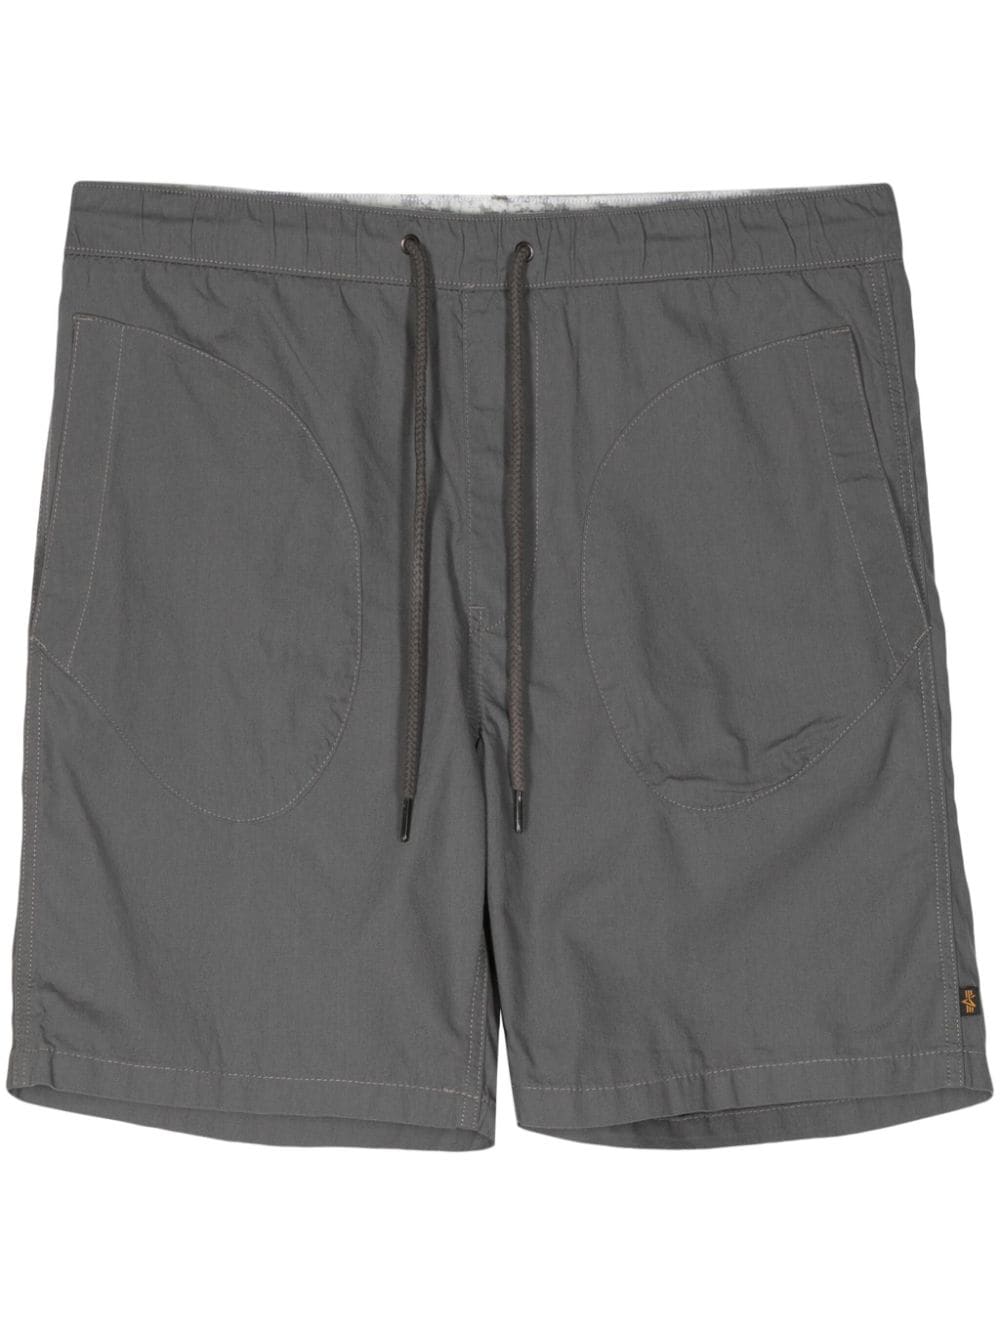 Alpha Industries Deck cotton shorts - Grigio